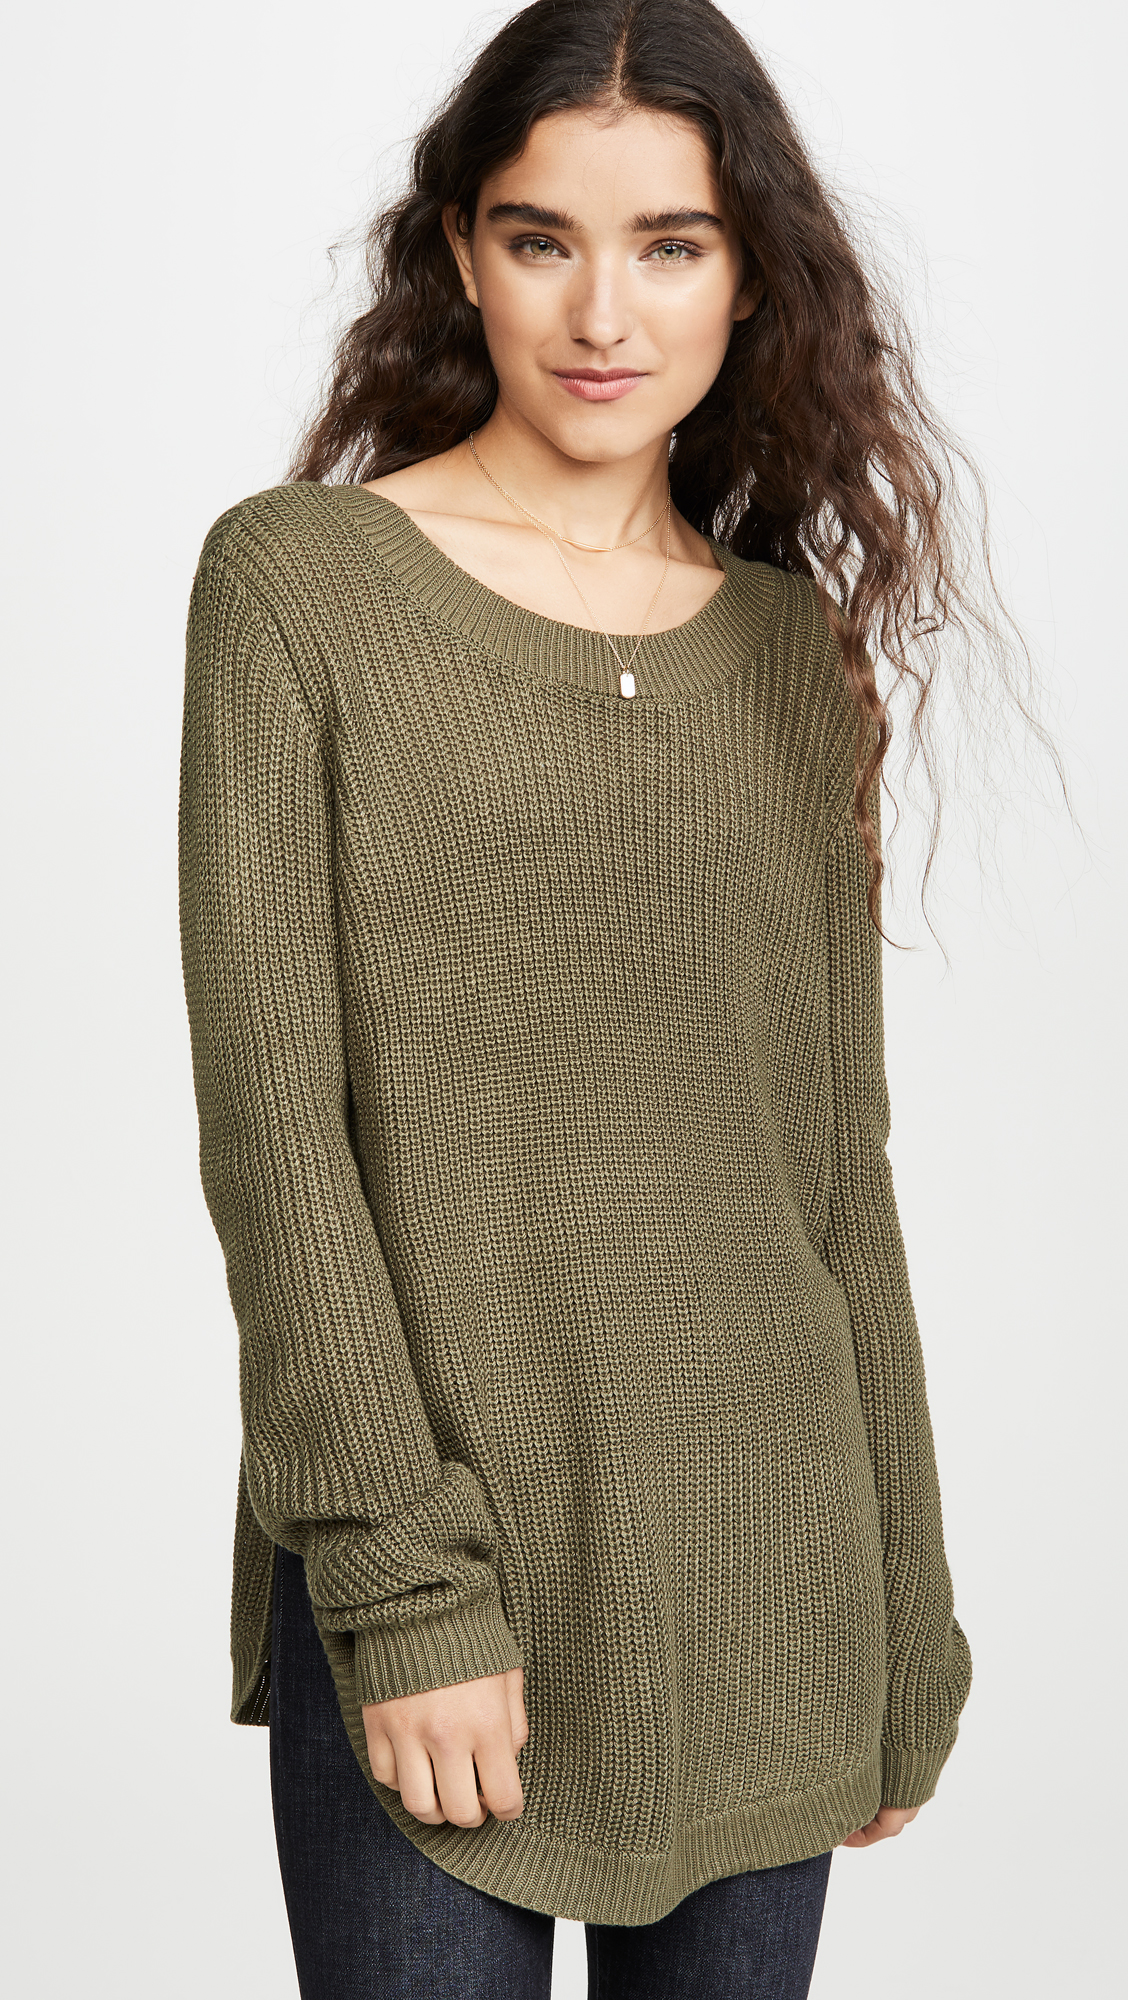 shopbop-green-sweater.jpg